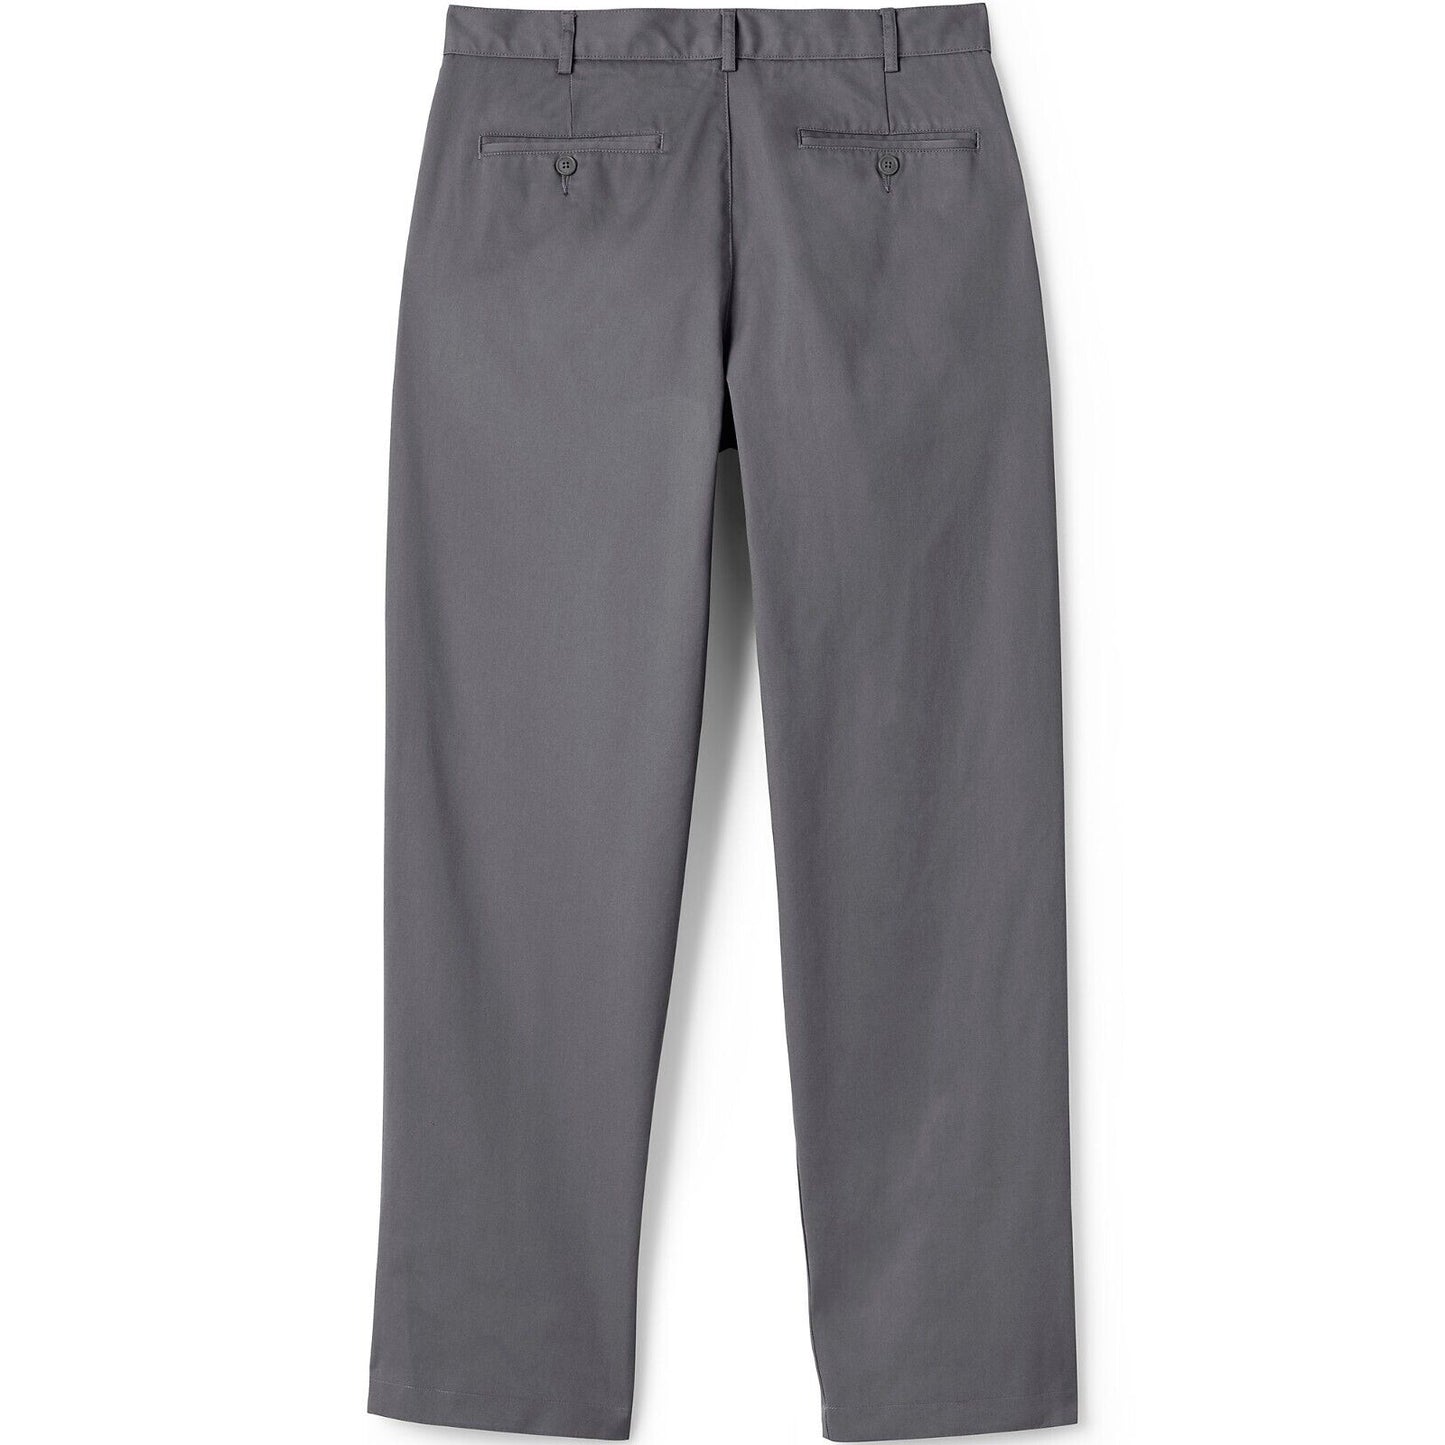 Men's Blend Plain Front Chino Pants Size 28